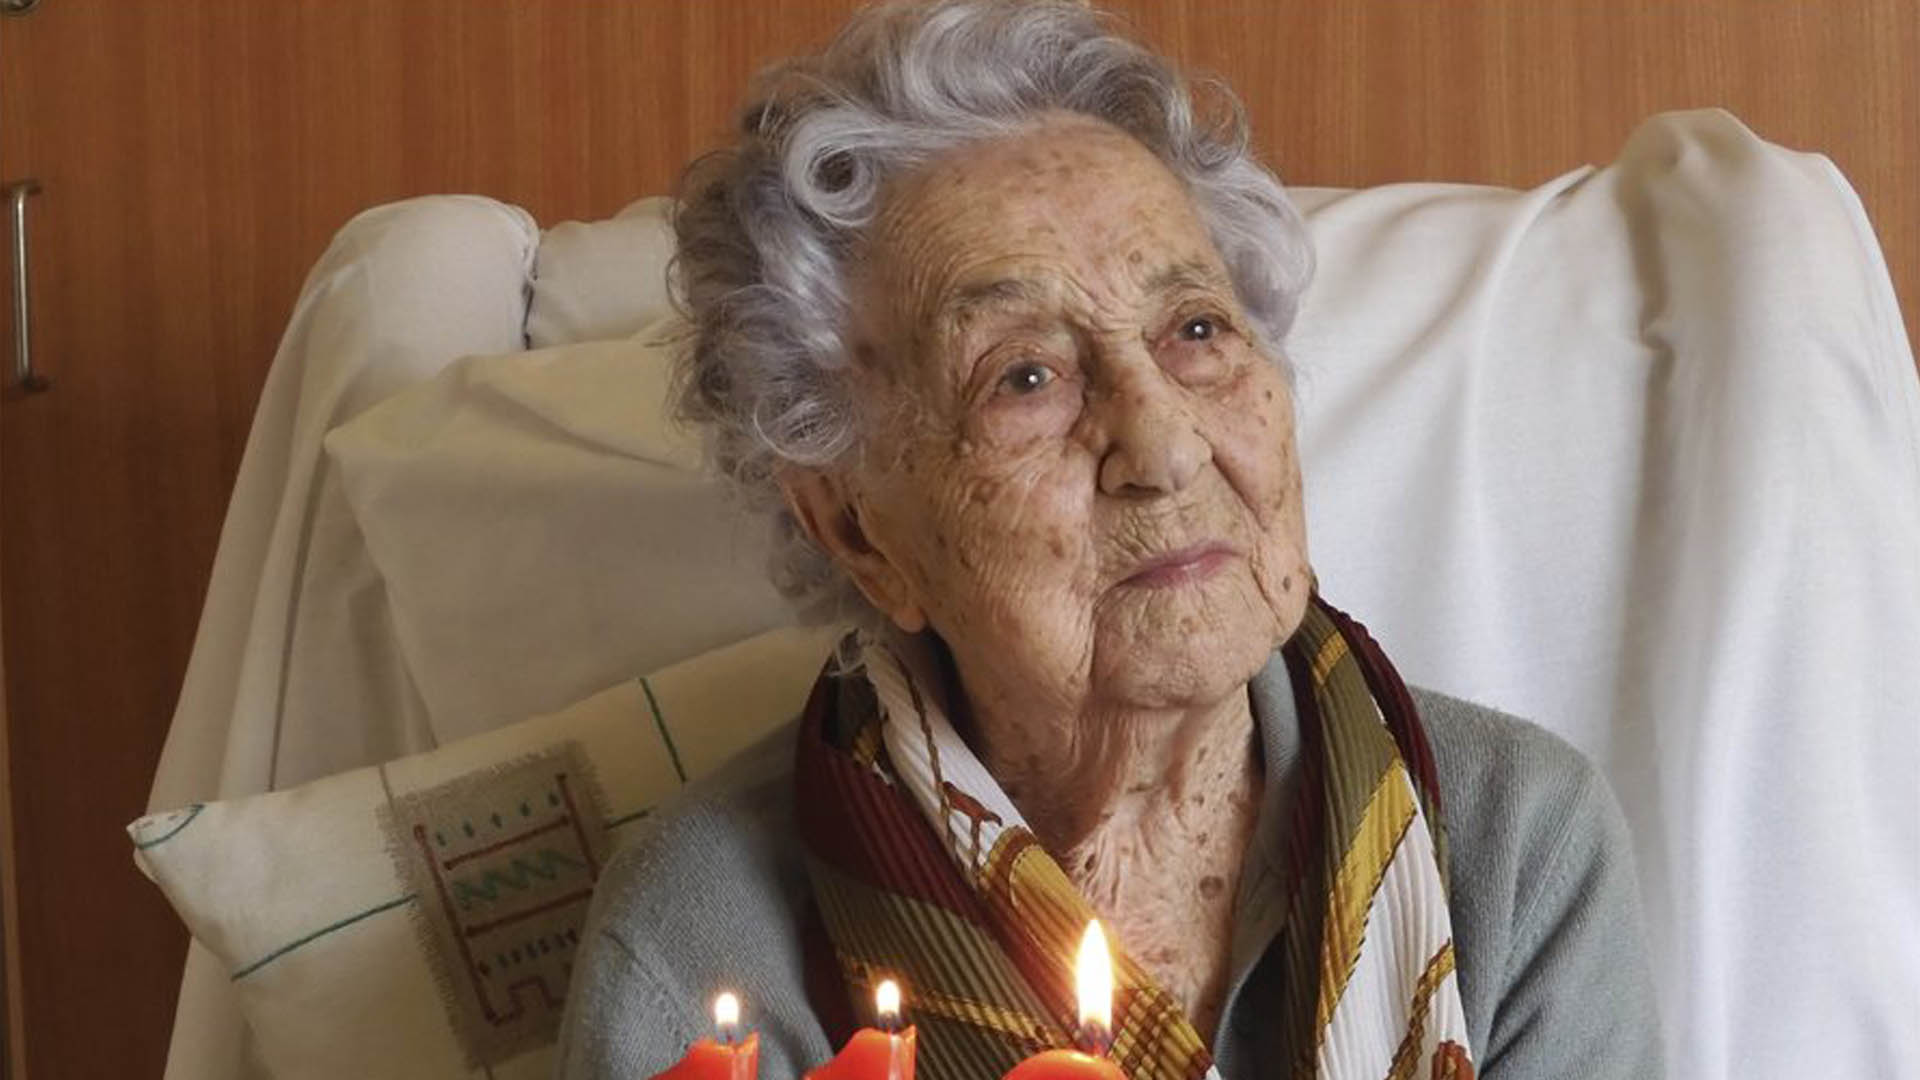 Lo bueno del día: María Branyas, la mujer más longeva de España, supera la COVID-19 a los 113 años